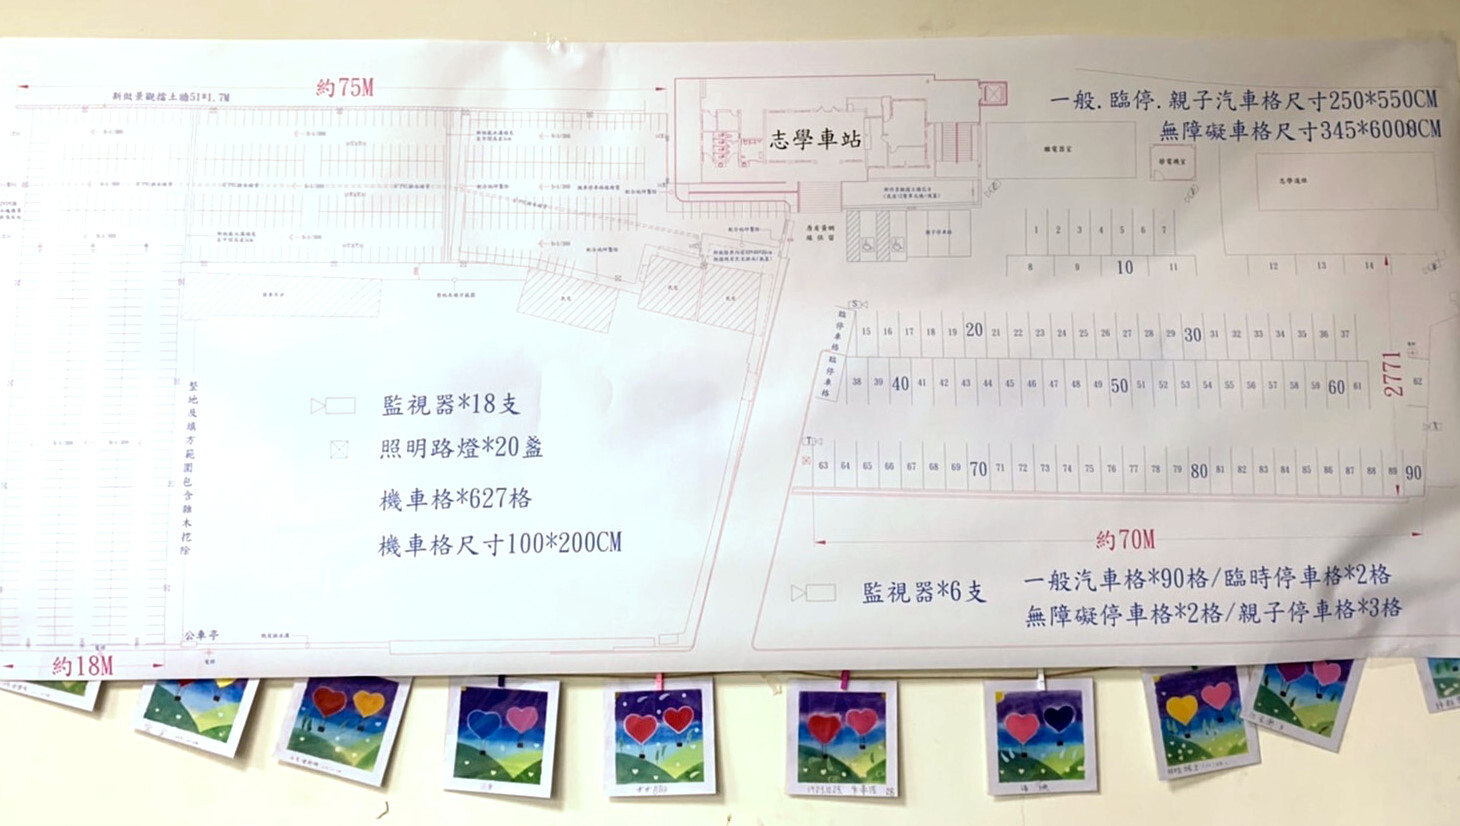 臺灣鐵路局規劃志學站增設停車場及汽車及機車停車車輛分流圖